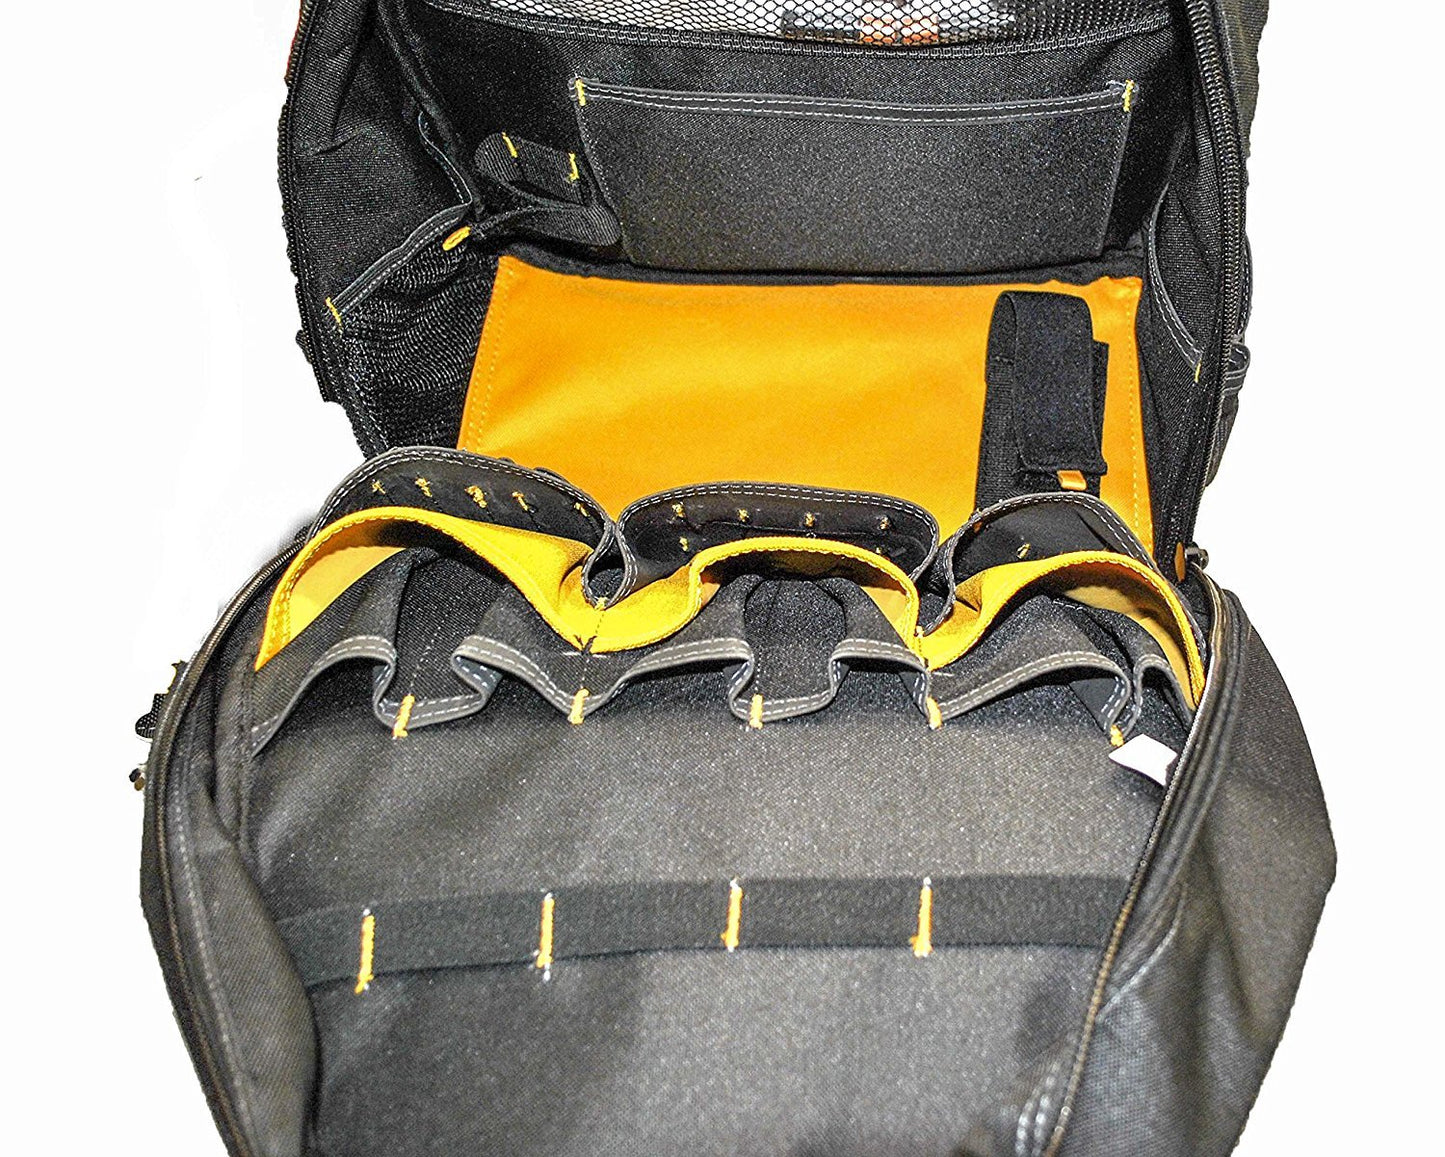 DEWALT DGL523 Lighted Tool Backpack Bag, 57-Pockets